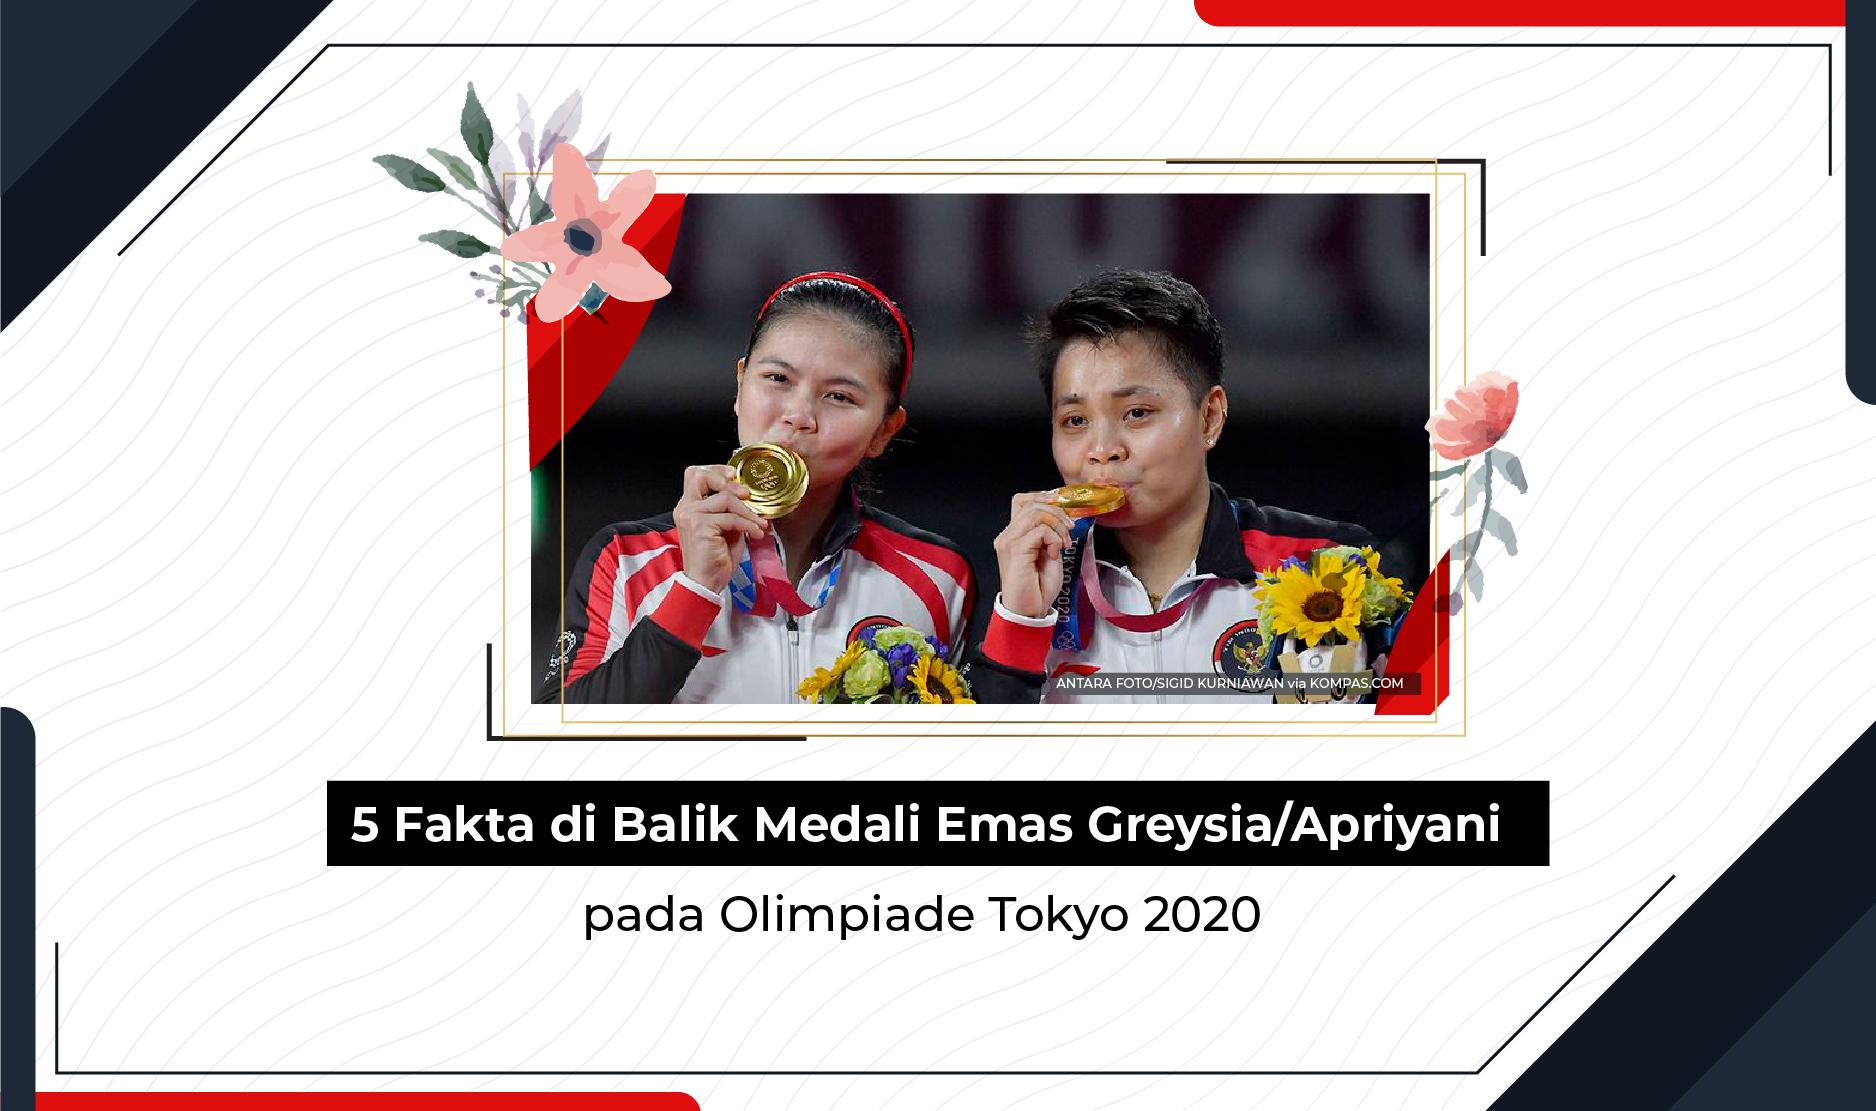 5 Fakta Di Balik Medali Emas Greysiaapriyani Pada Olimpiade Tokyo 2020